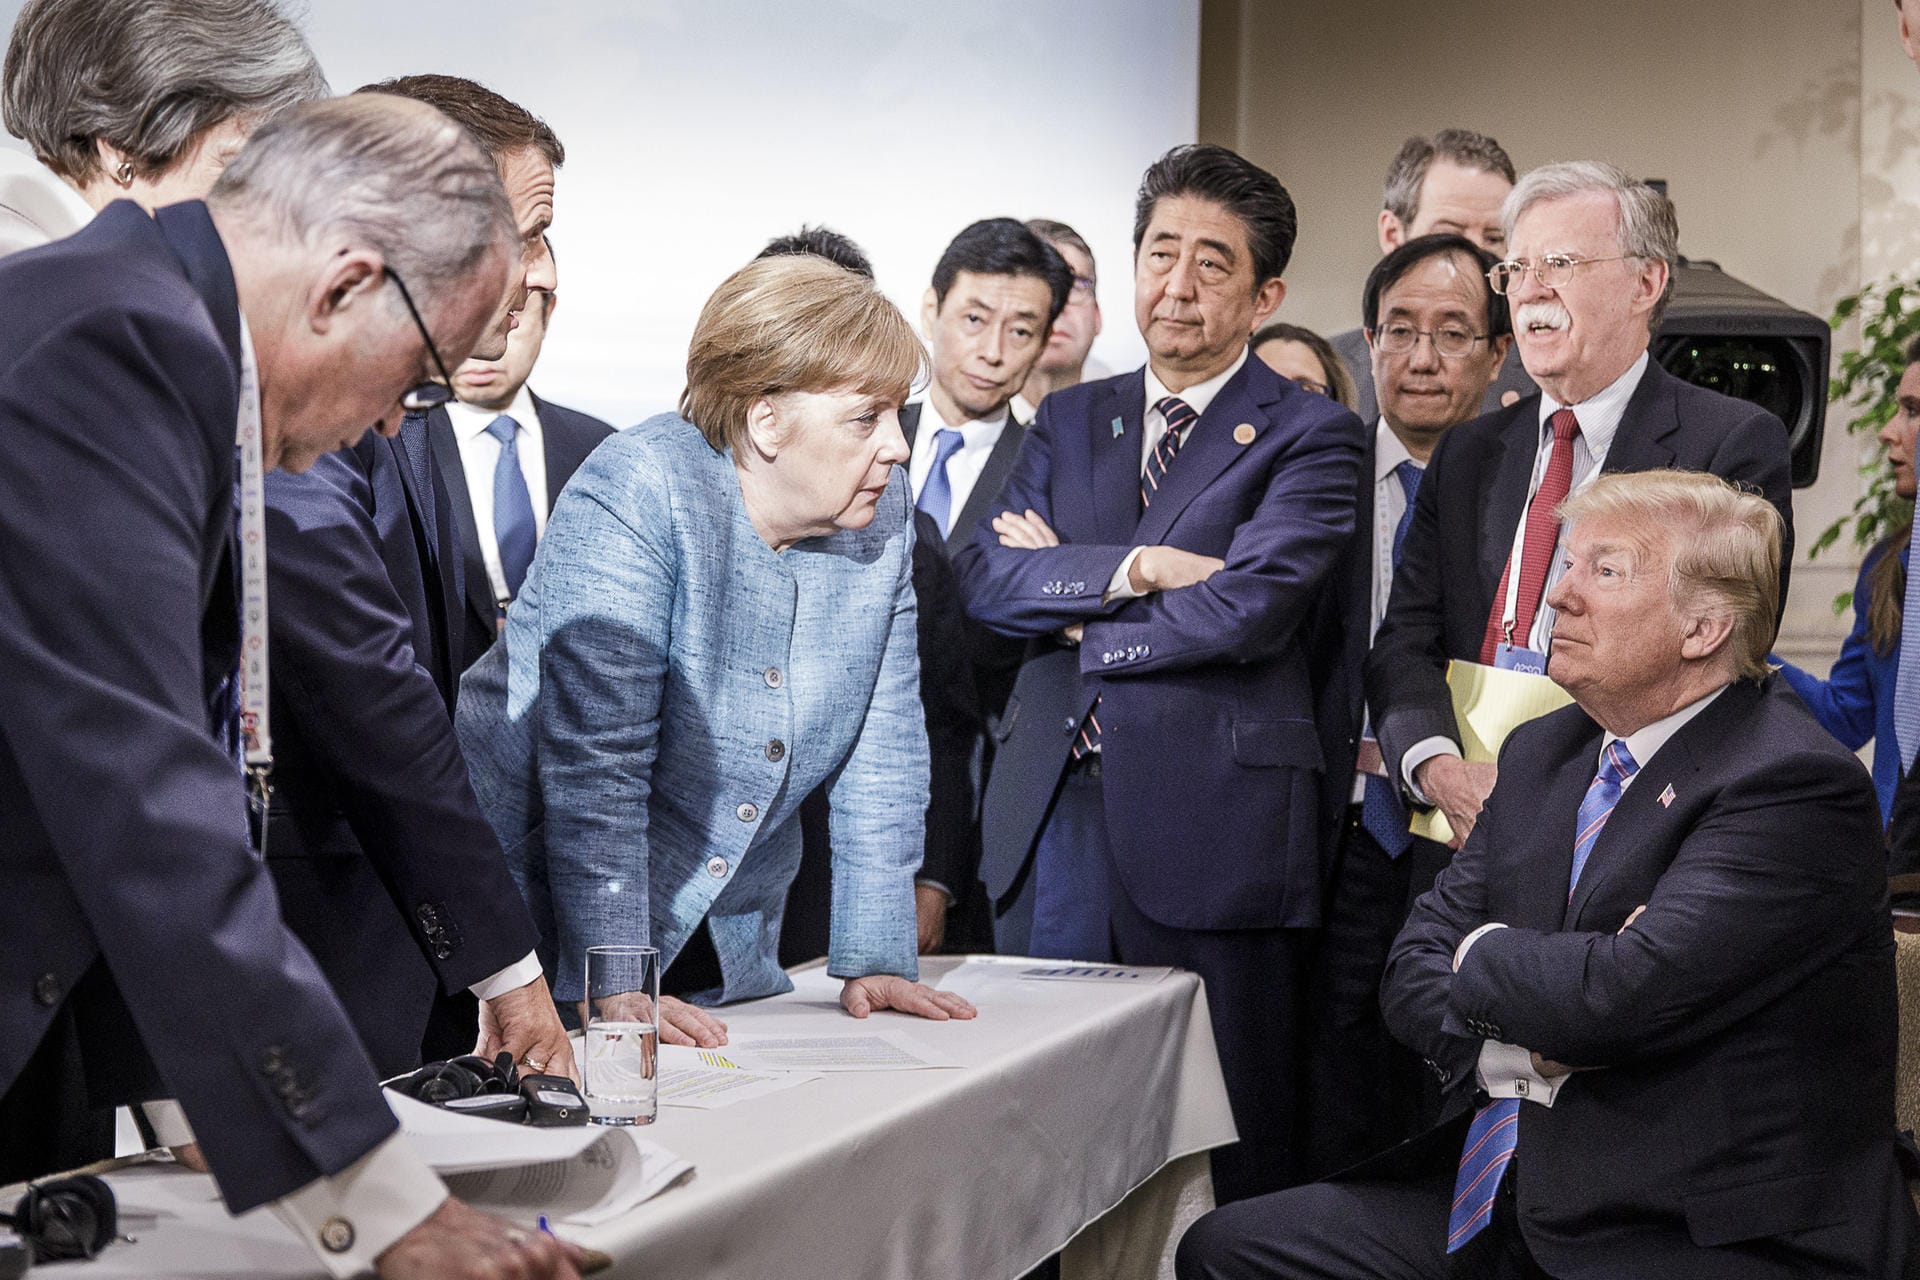 09. Juni 2018: Ein Bild wie ein Gemälde. In Kanada trifft die Kanzlerin beim G7-Gipfel auf den US-Präsidenten – und lächelt nicht mehr. Zumindest nicht für dieses Foto, das die deutsche Delegation selbst verbreitet und das Merkels Entschlossenheit zeigen soll. Der Rest ist Geschichte: Trump lässt die Gipfelerklärung mit zwei Tweets platzen. Merkels Gesichtsausdruck nach den Tweets ist nicht überliefert.